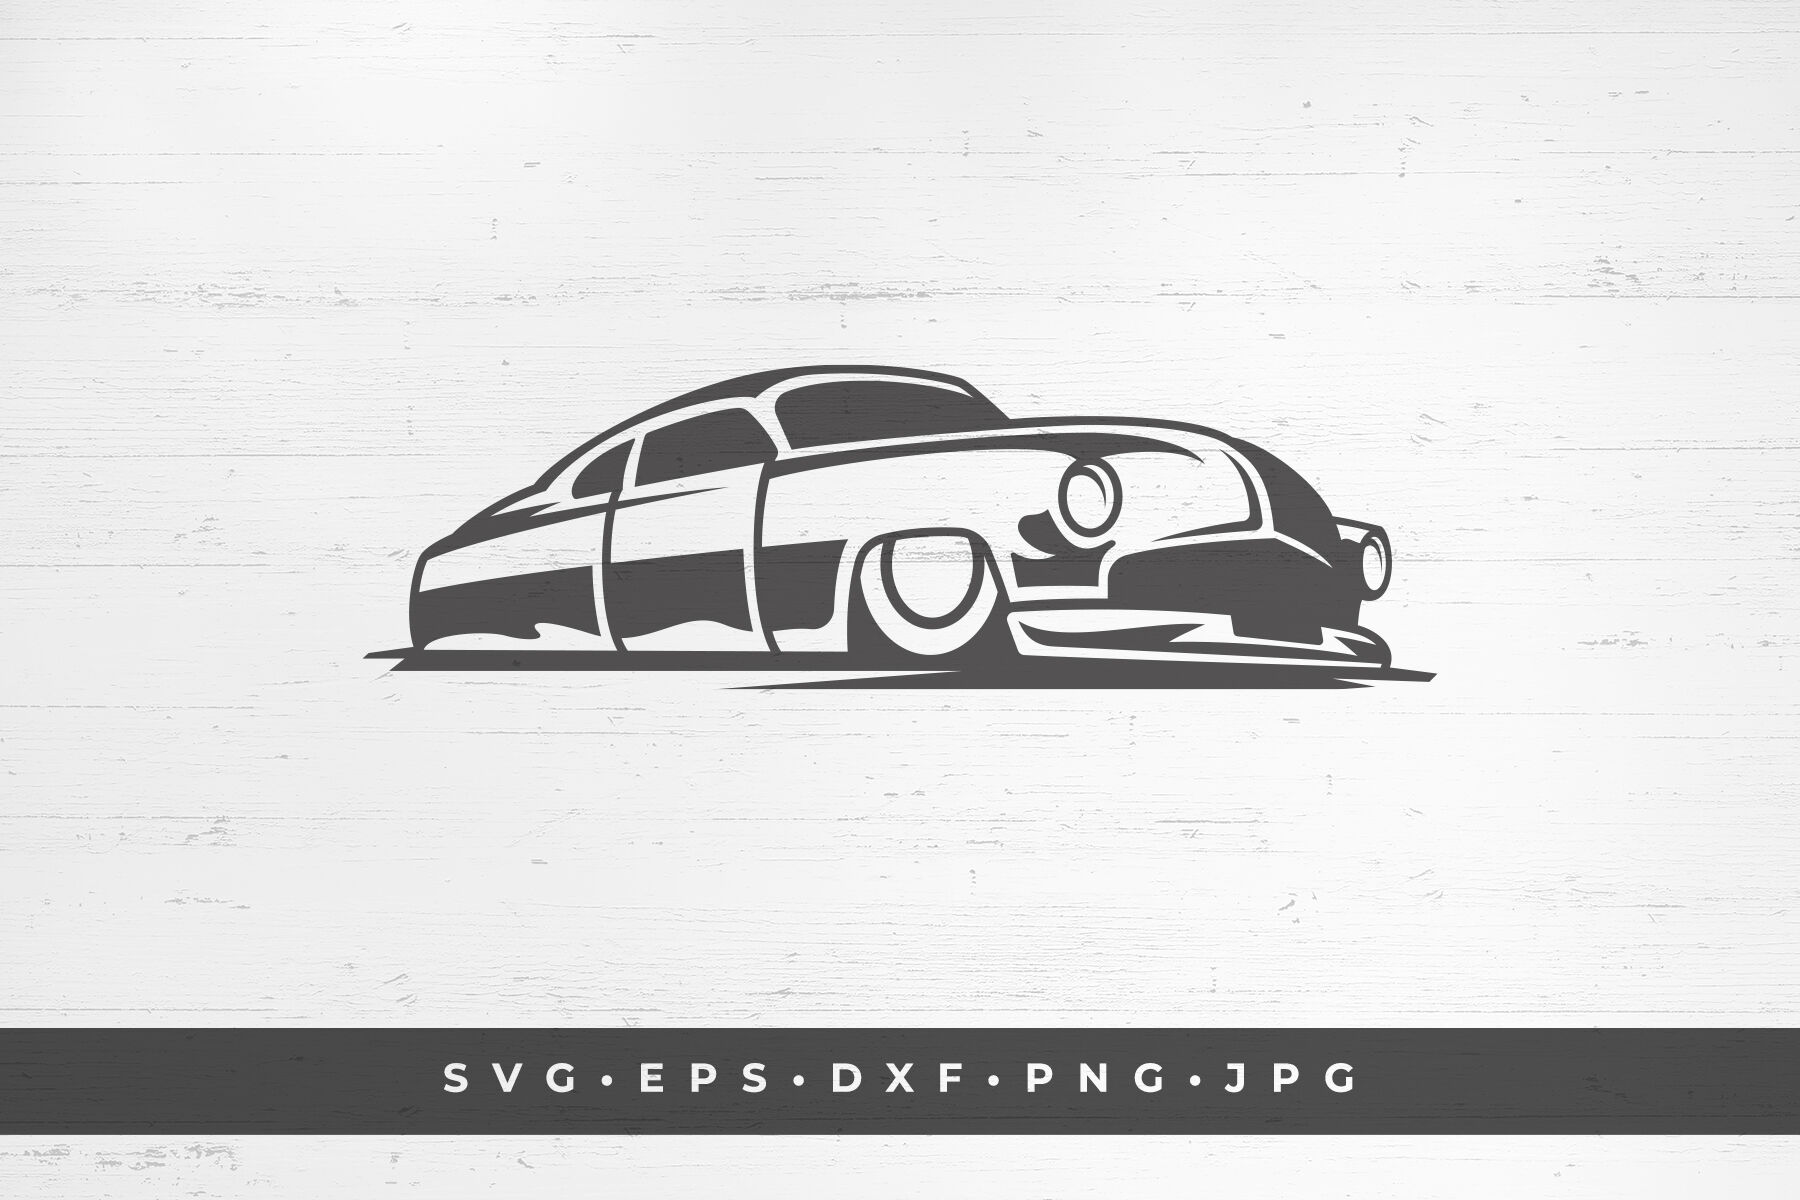 Car Icon Car Svg Car Icon Svg Car Icon Png Car Icon Jpg 